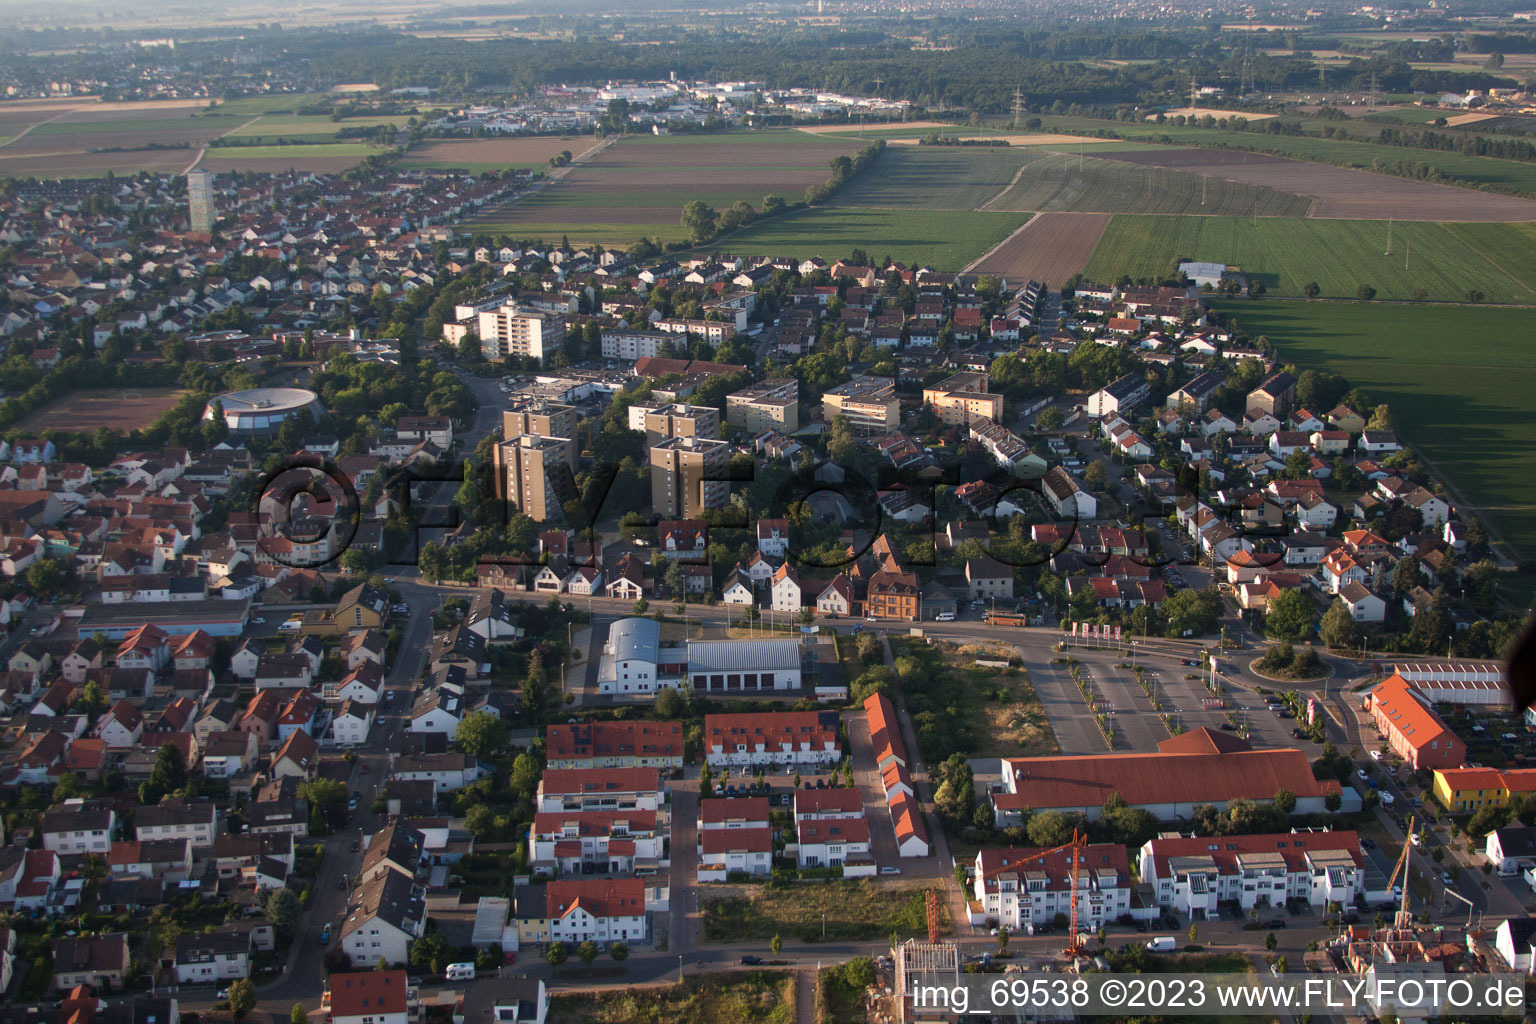 Mutterstadt im Bundesland Rheinland-Pfalz, Deutschland aus der Drohnenperspektive